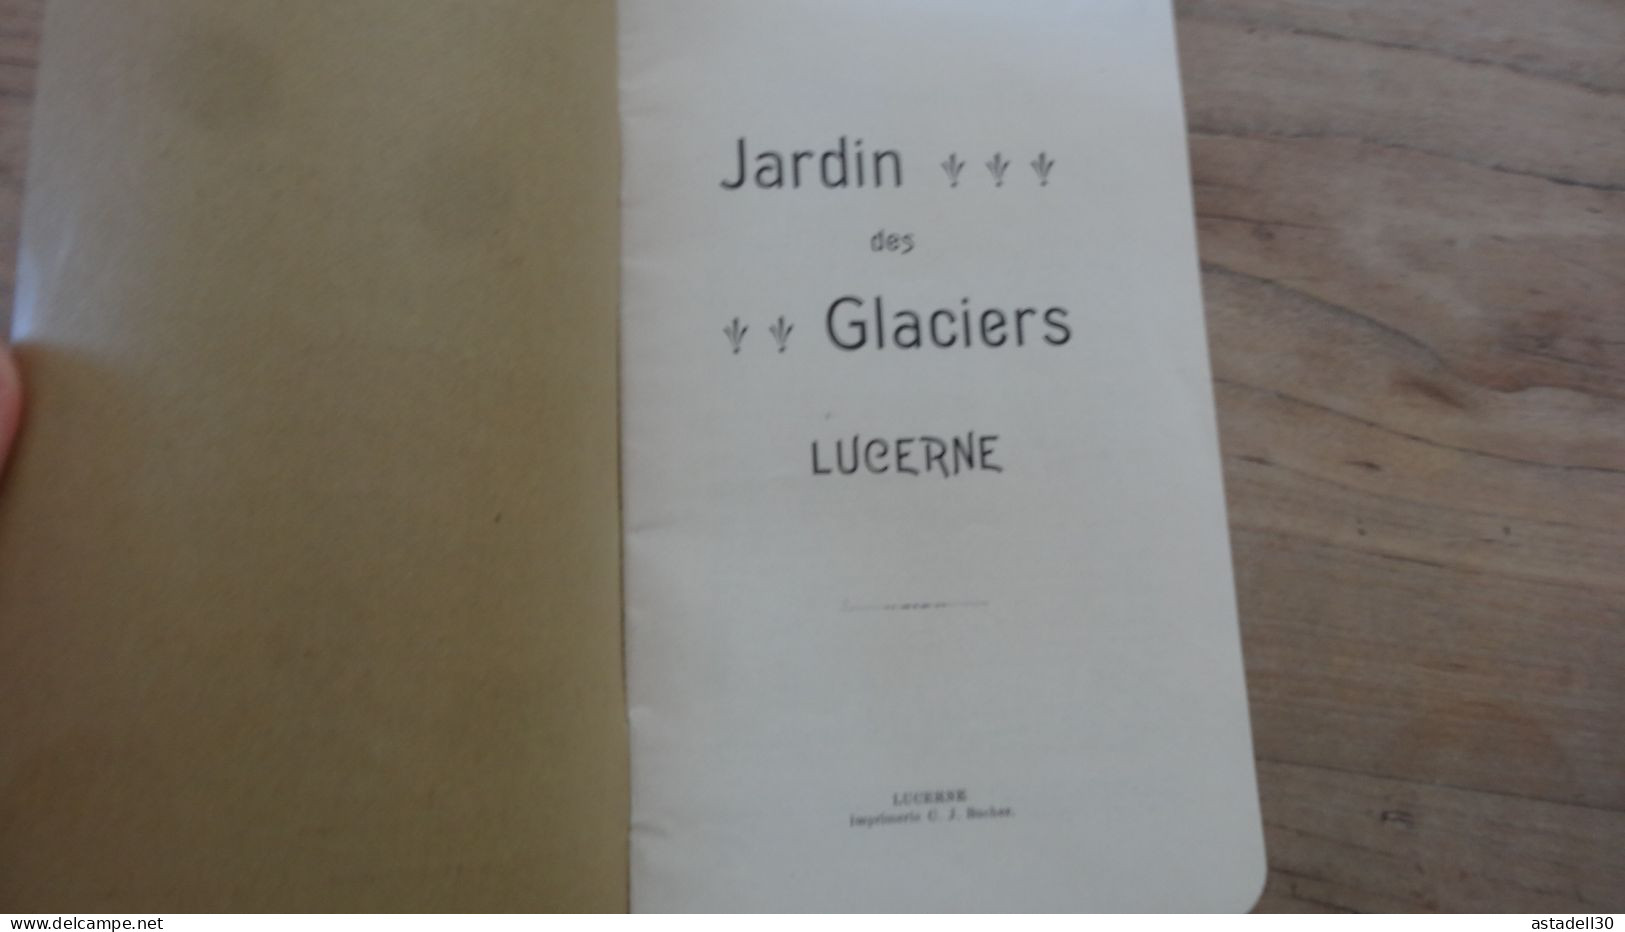 SUISSE, Livret Jardin Des Glaciers, LUCERNE, Fin XIXe  ................ TIR2-POS17 - Dépliants Touristiques